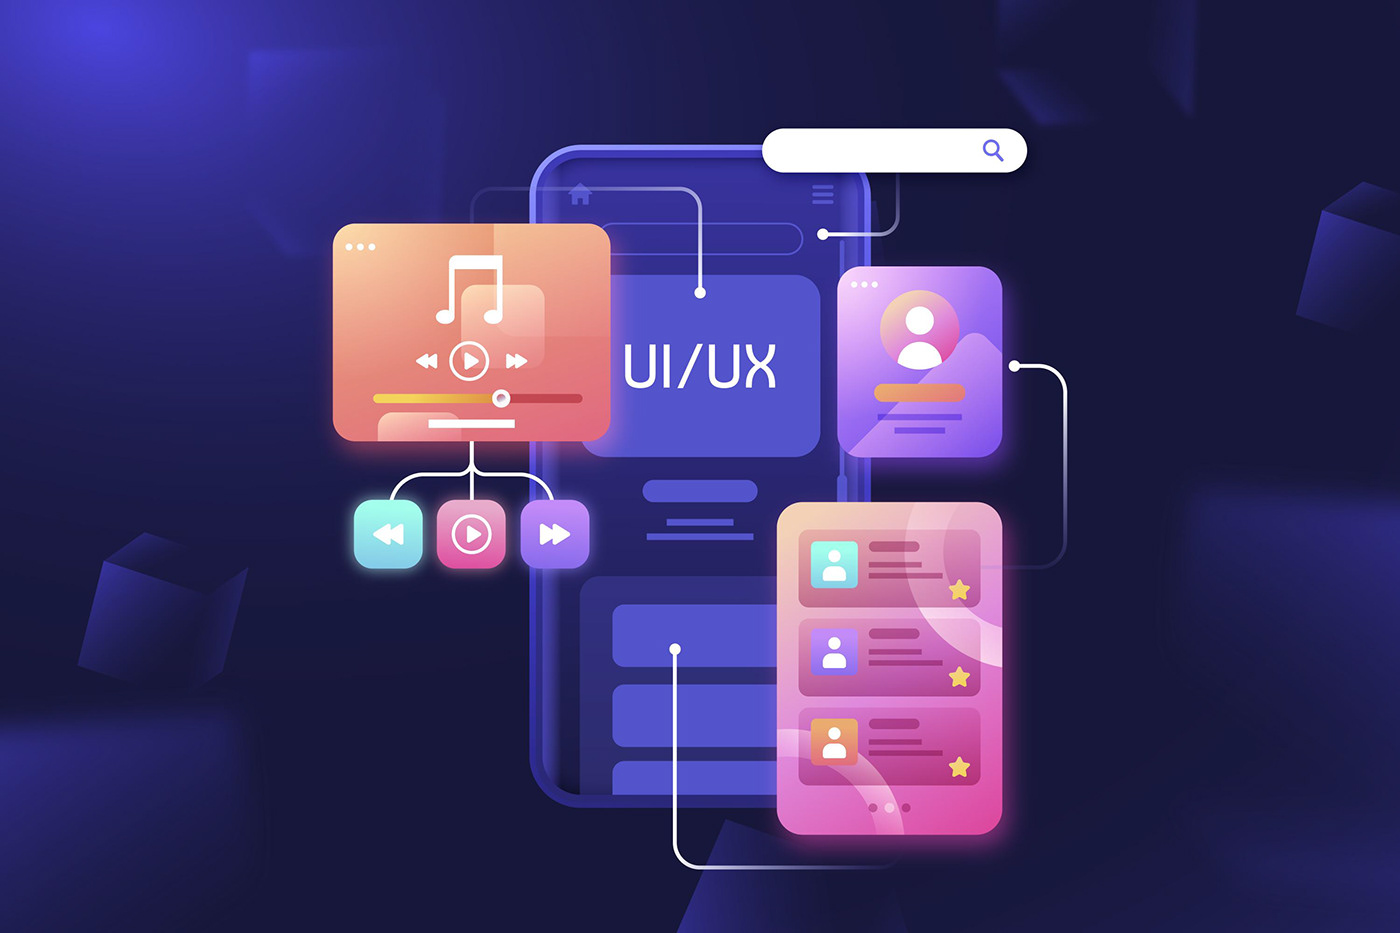 app design App Designs UI ui design UI/UX uidesign uiux user interface ux UX design